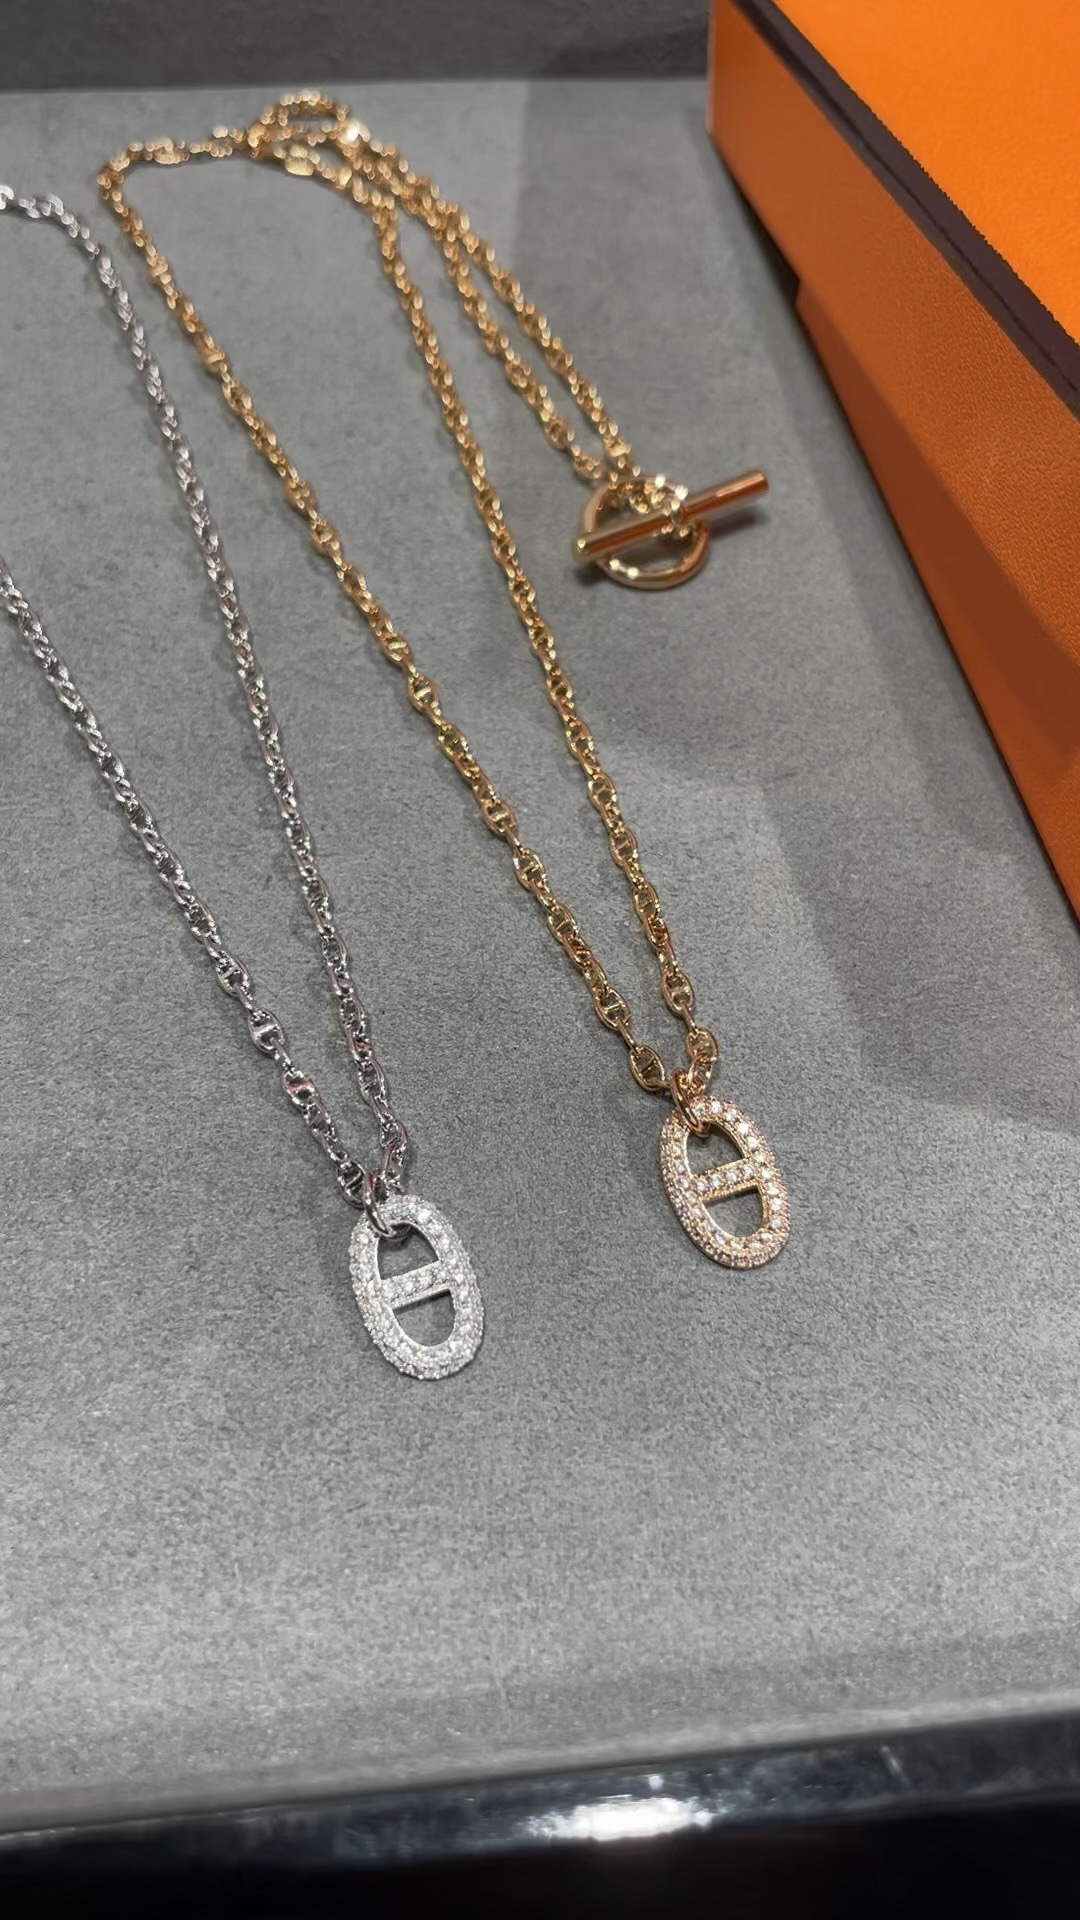 Hermes Jewelry Necklaces & Pendants